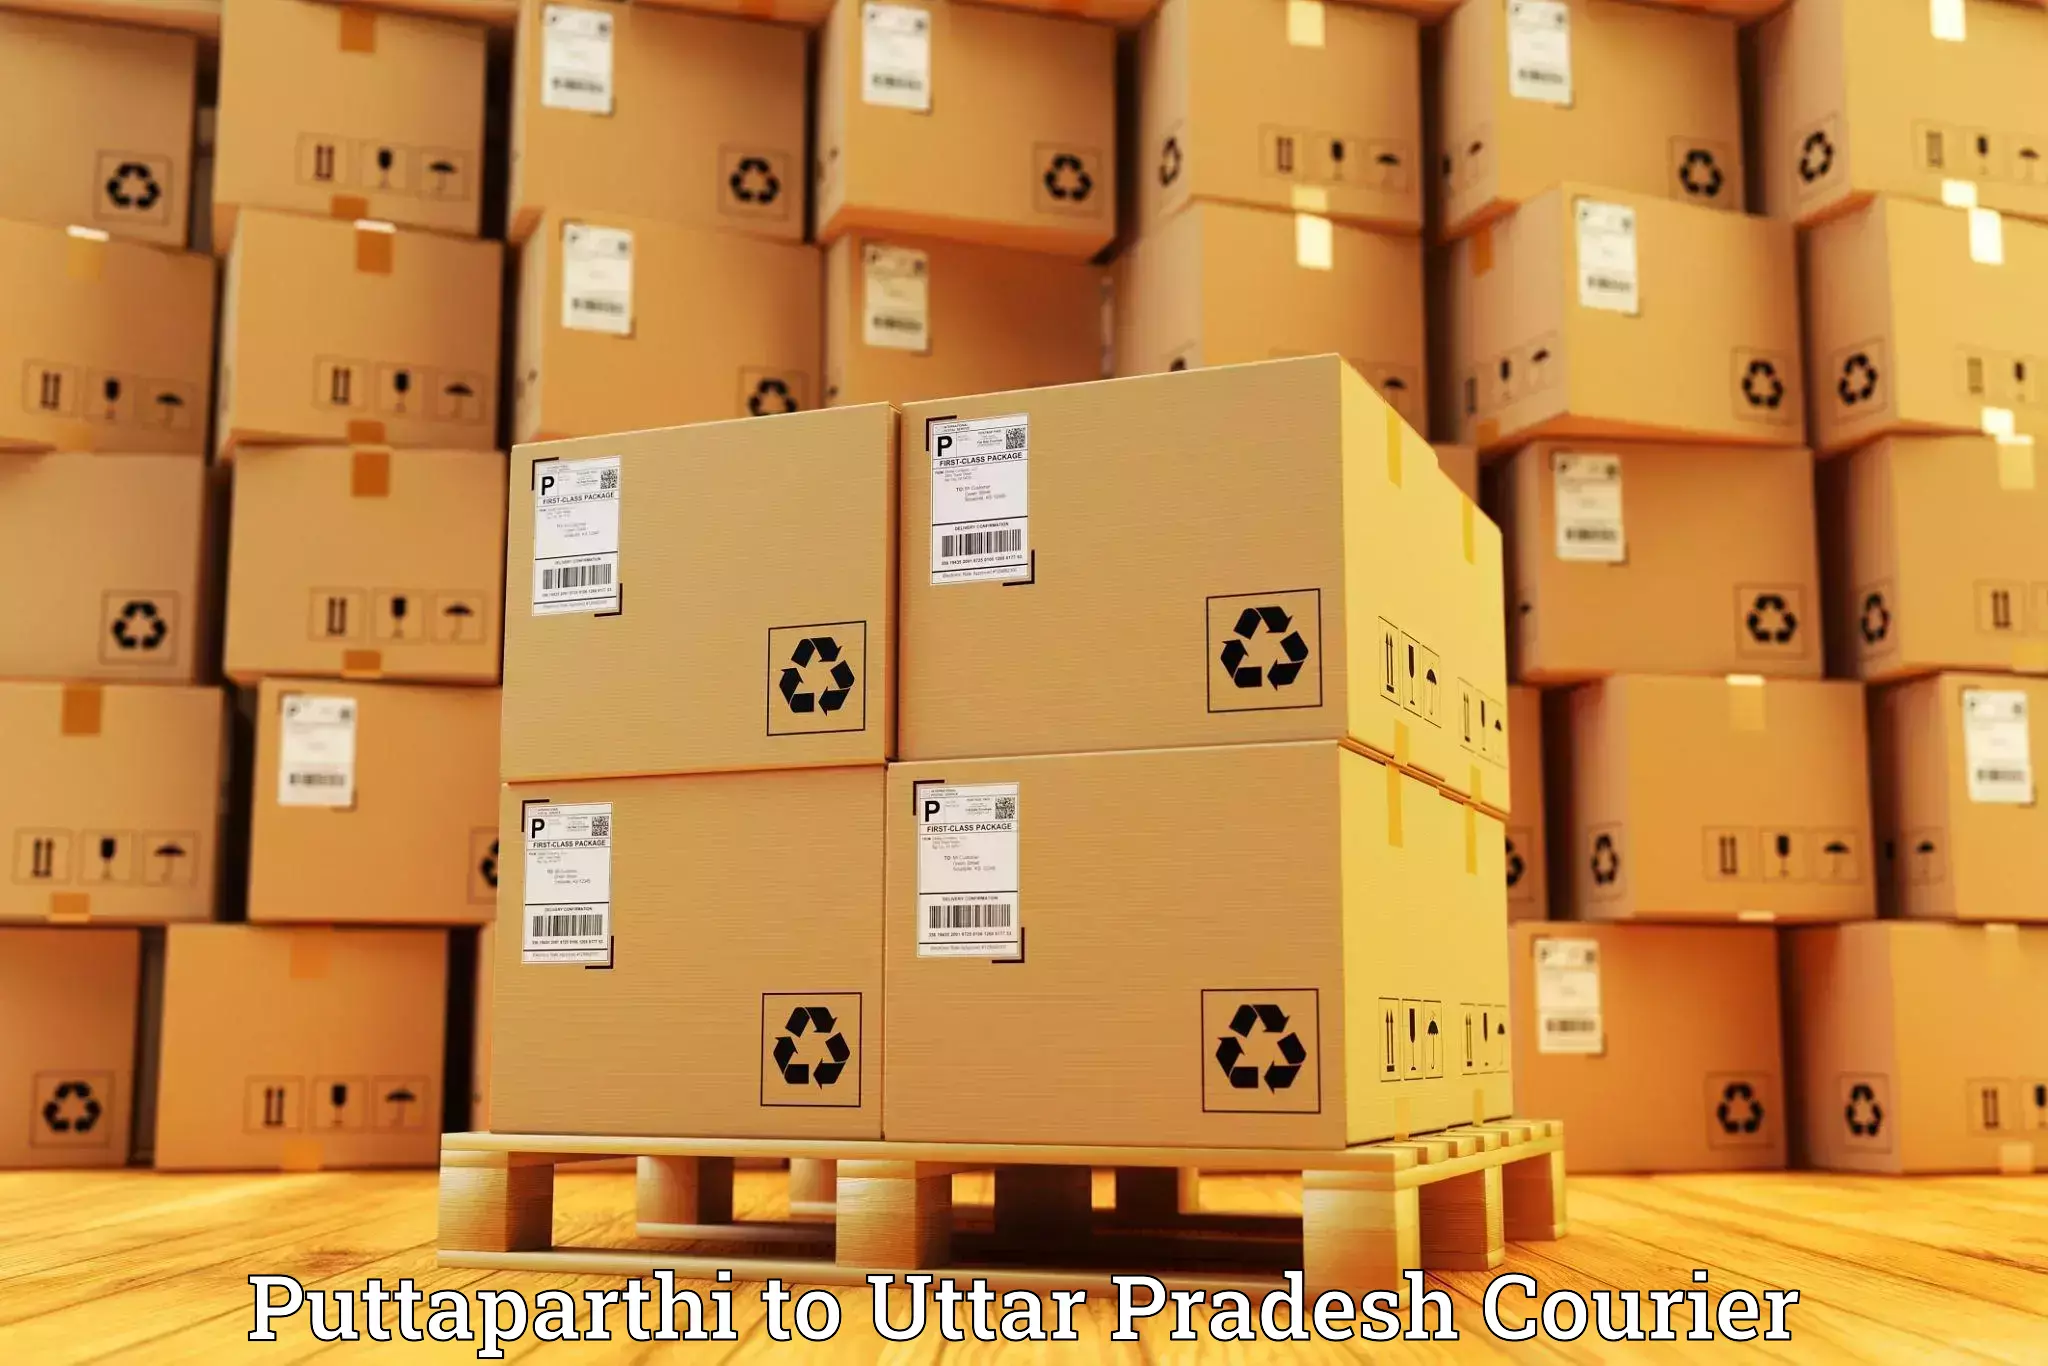 Luggage delivery network Puttaparthi to Uttar Pradesh